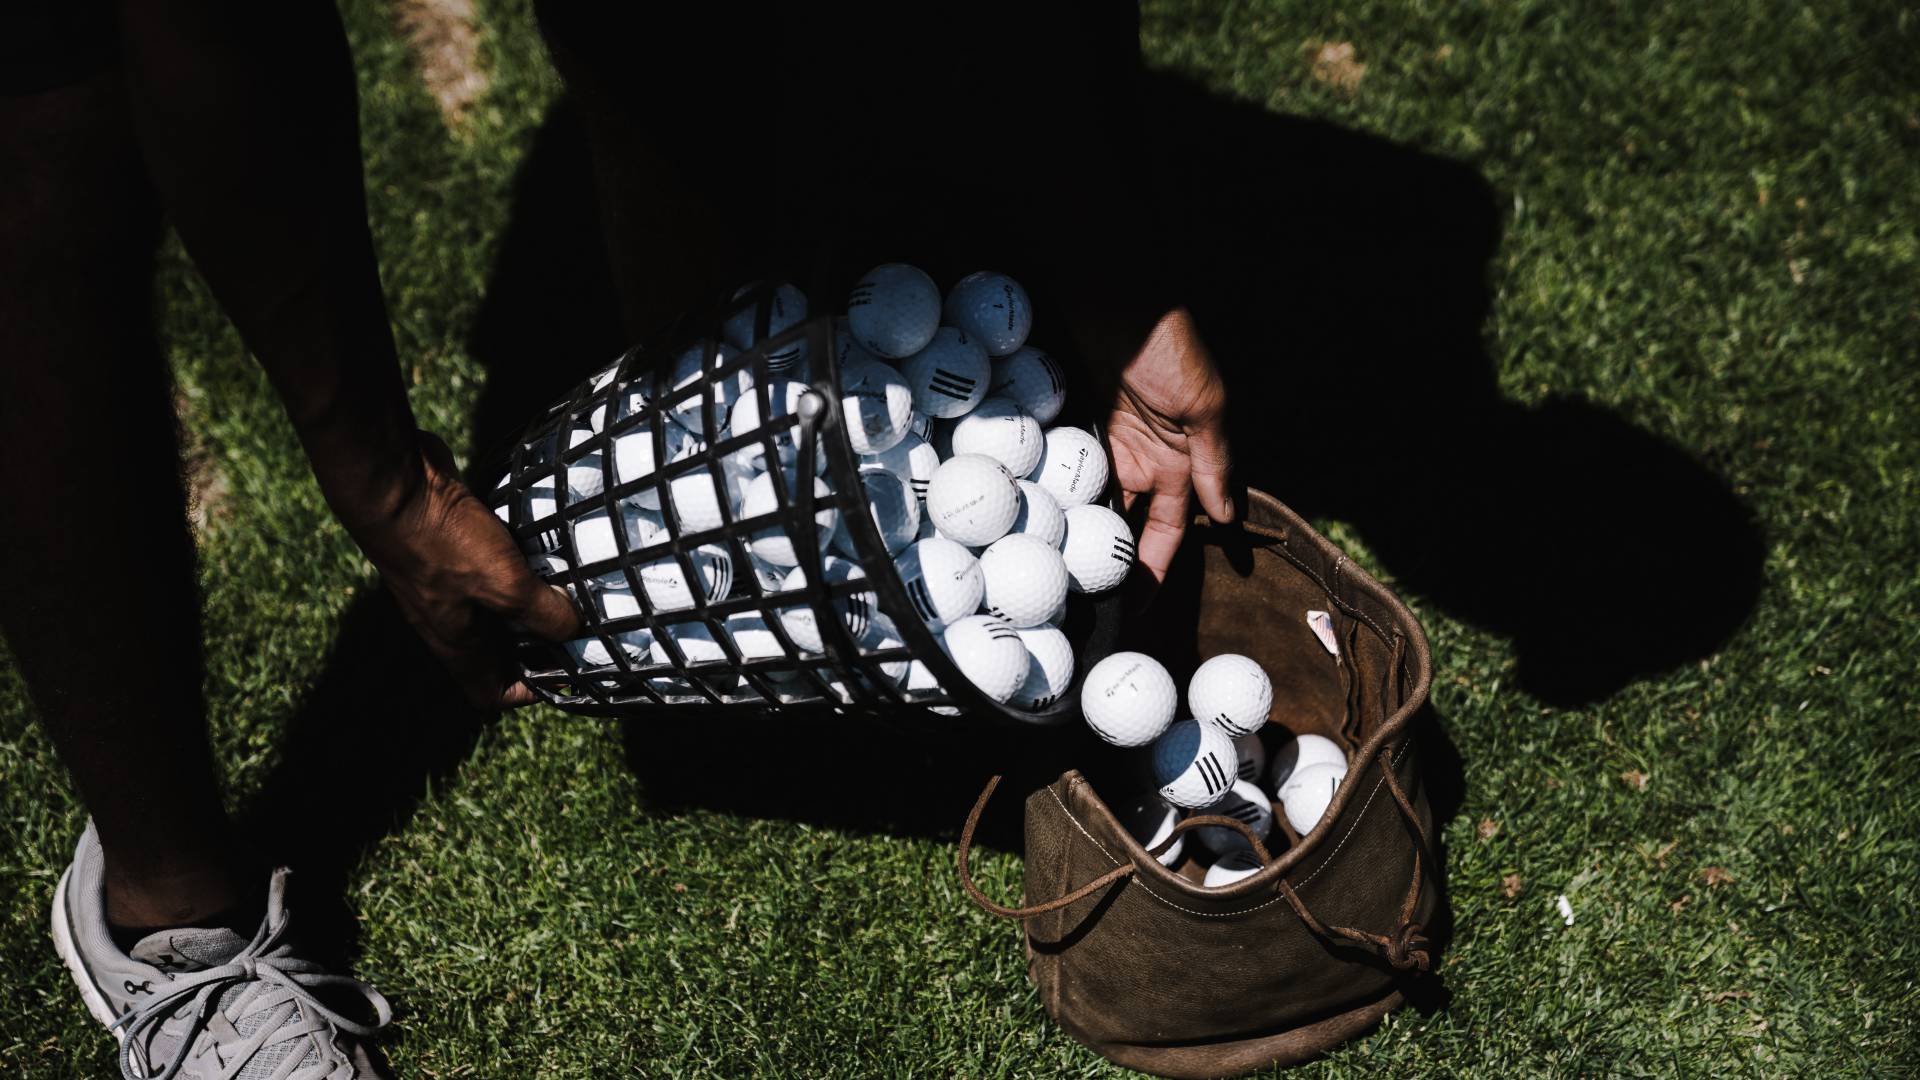 Man pouring golf balls into bag